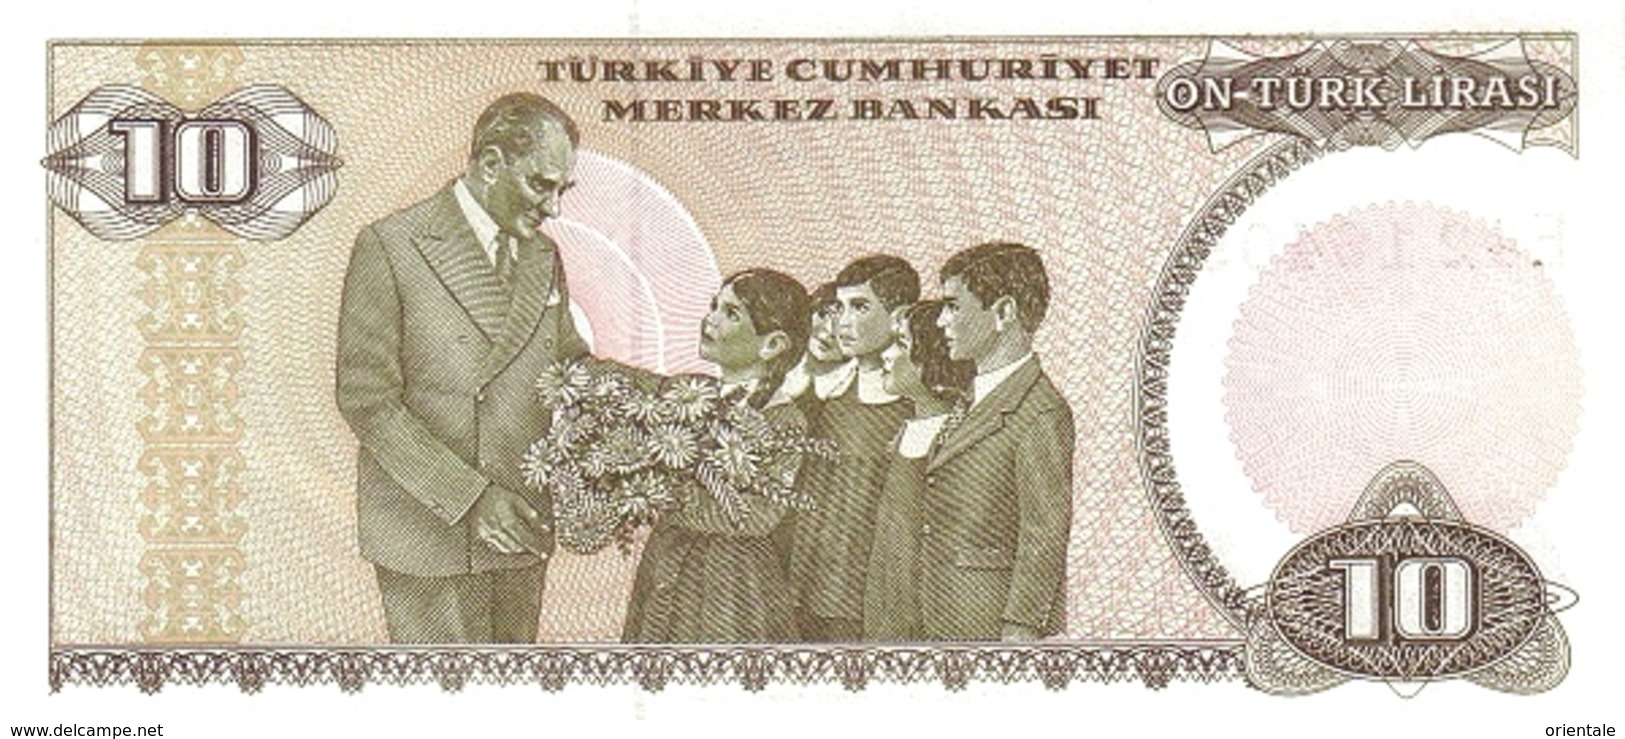 TURKEY P. 193 10 L 1970 UNC - Turquie